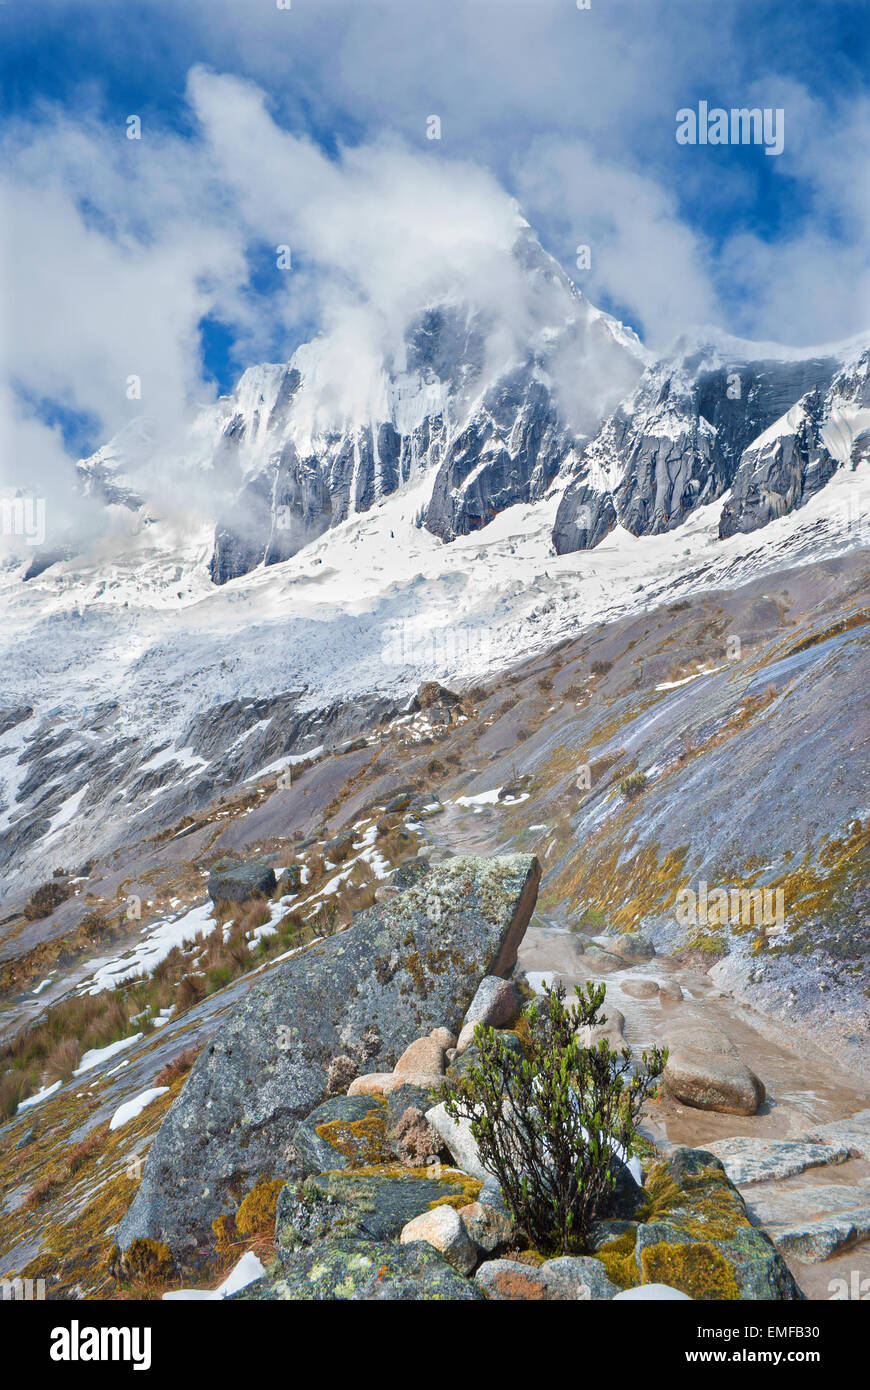 Perù - Tawllirahu picco (hispanicized Taulliraju ortografia - 5,830) nella Cordillera Blanca nelle Ande dal trek di Santa Cruz. Foto Stock